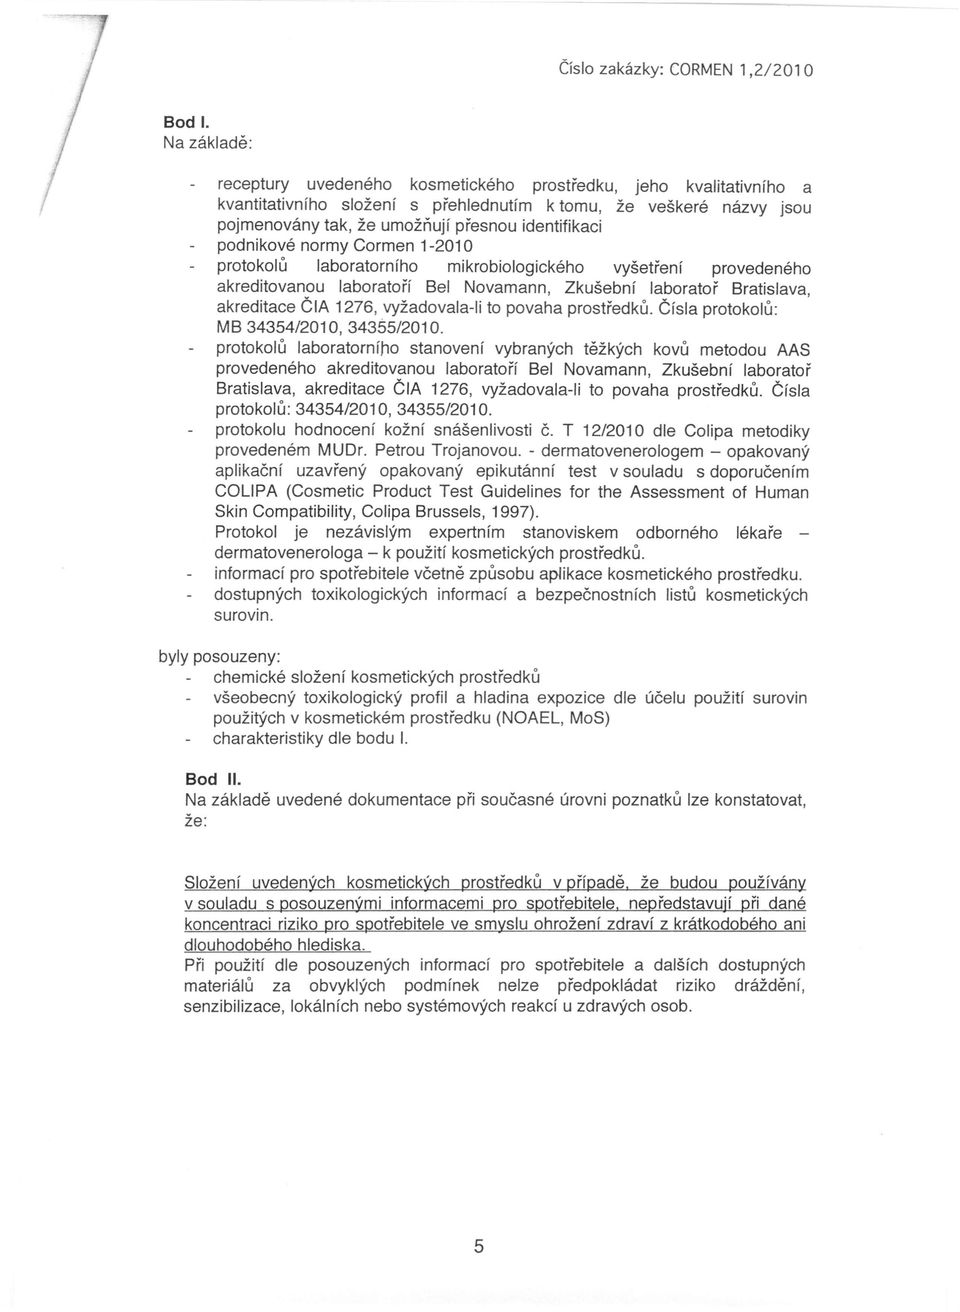 podnikové normy Cormen 1-2010 protokolů laboratorního mikrobiologického vyšetření provedeného akreditovanou laboratoří Bel Novamann, Zkušební laboratoř Bratislava, akreditace ČIA 1276, vyžadovala-ii